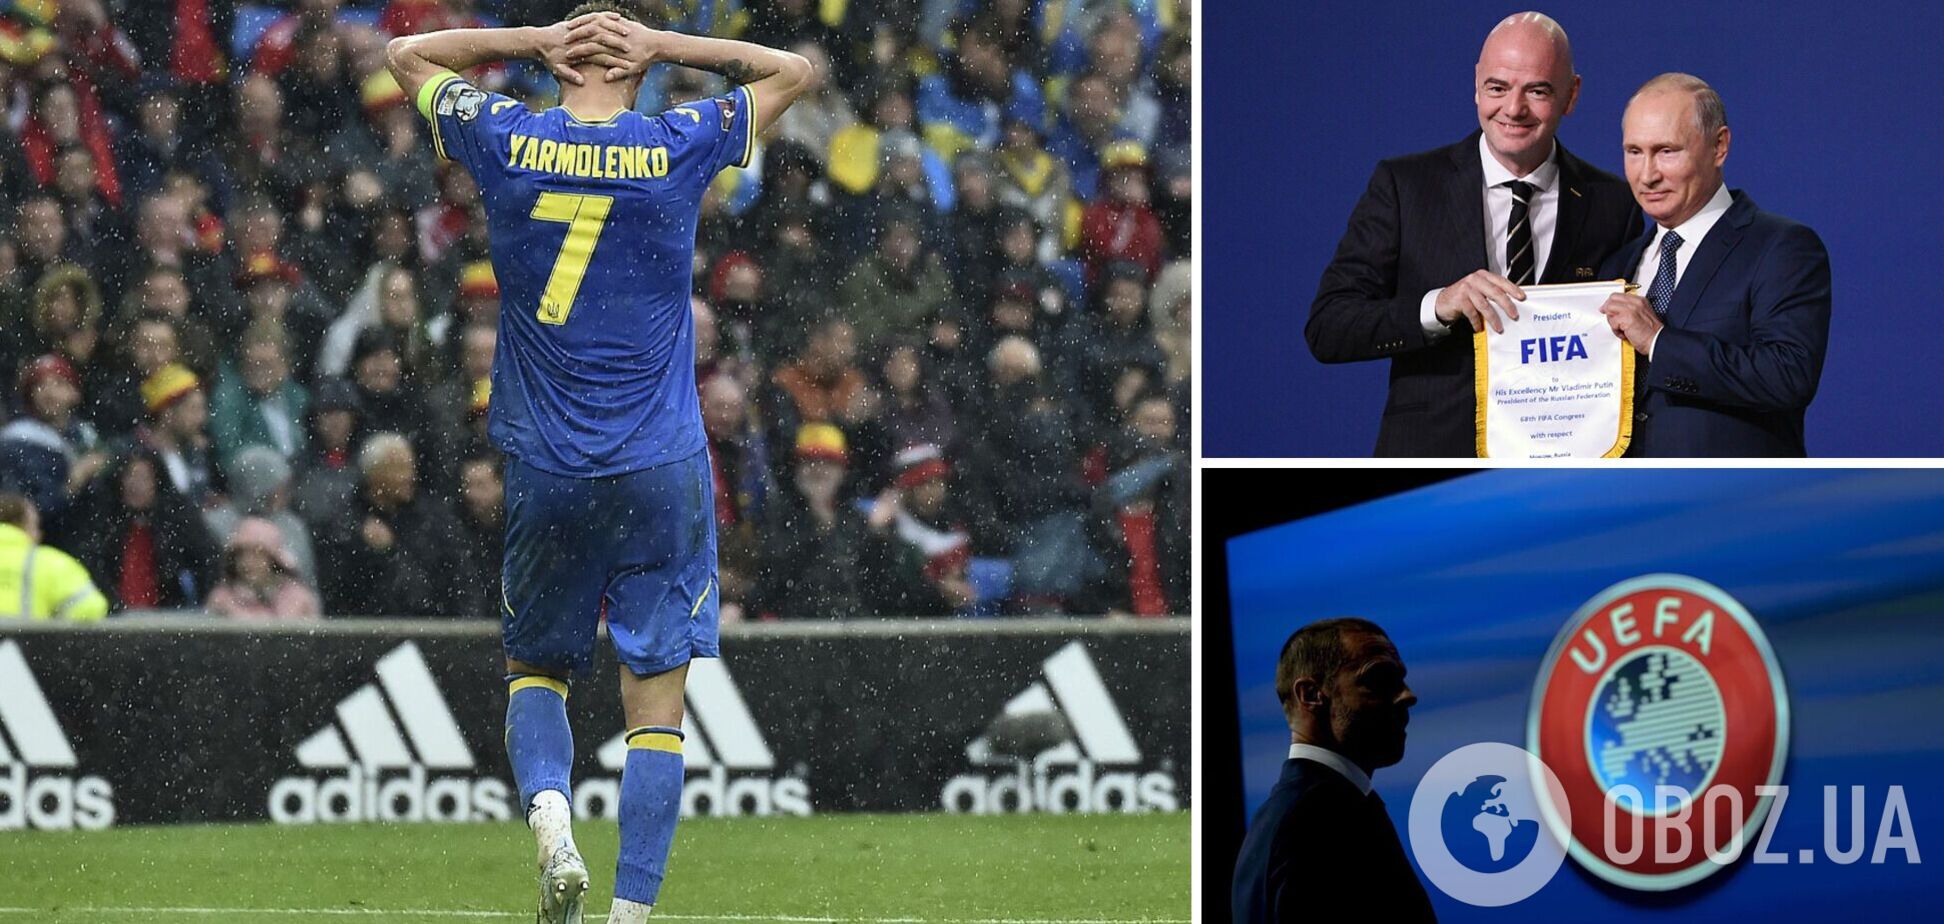 ФИФА и УЕФА пригрозили отстранить Украину: детали скандала